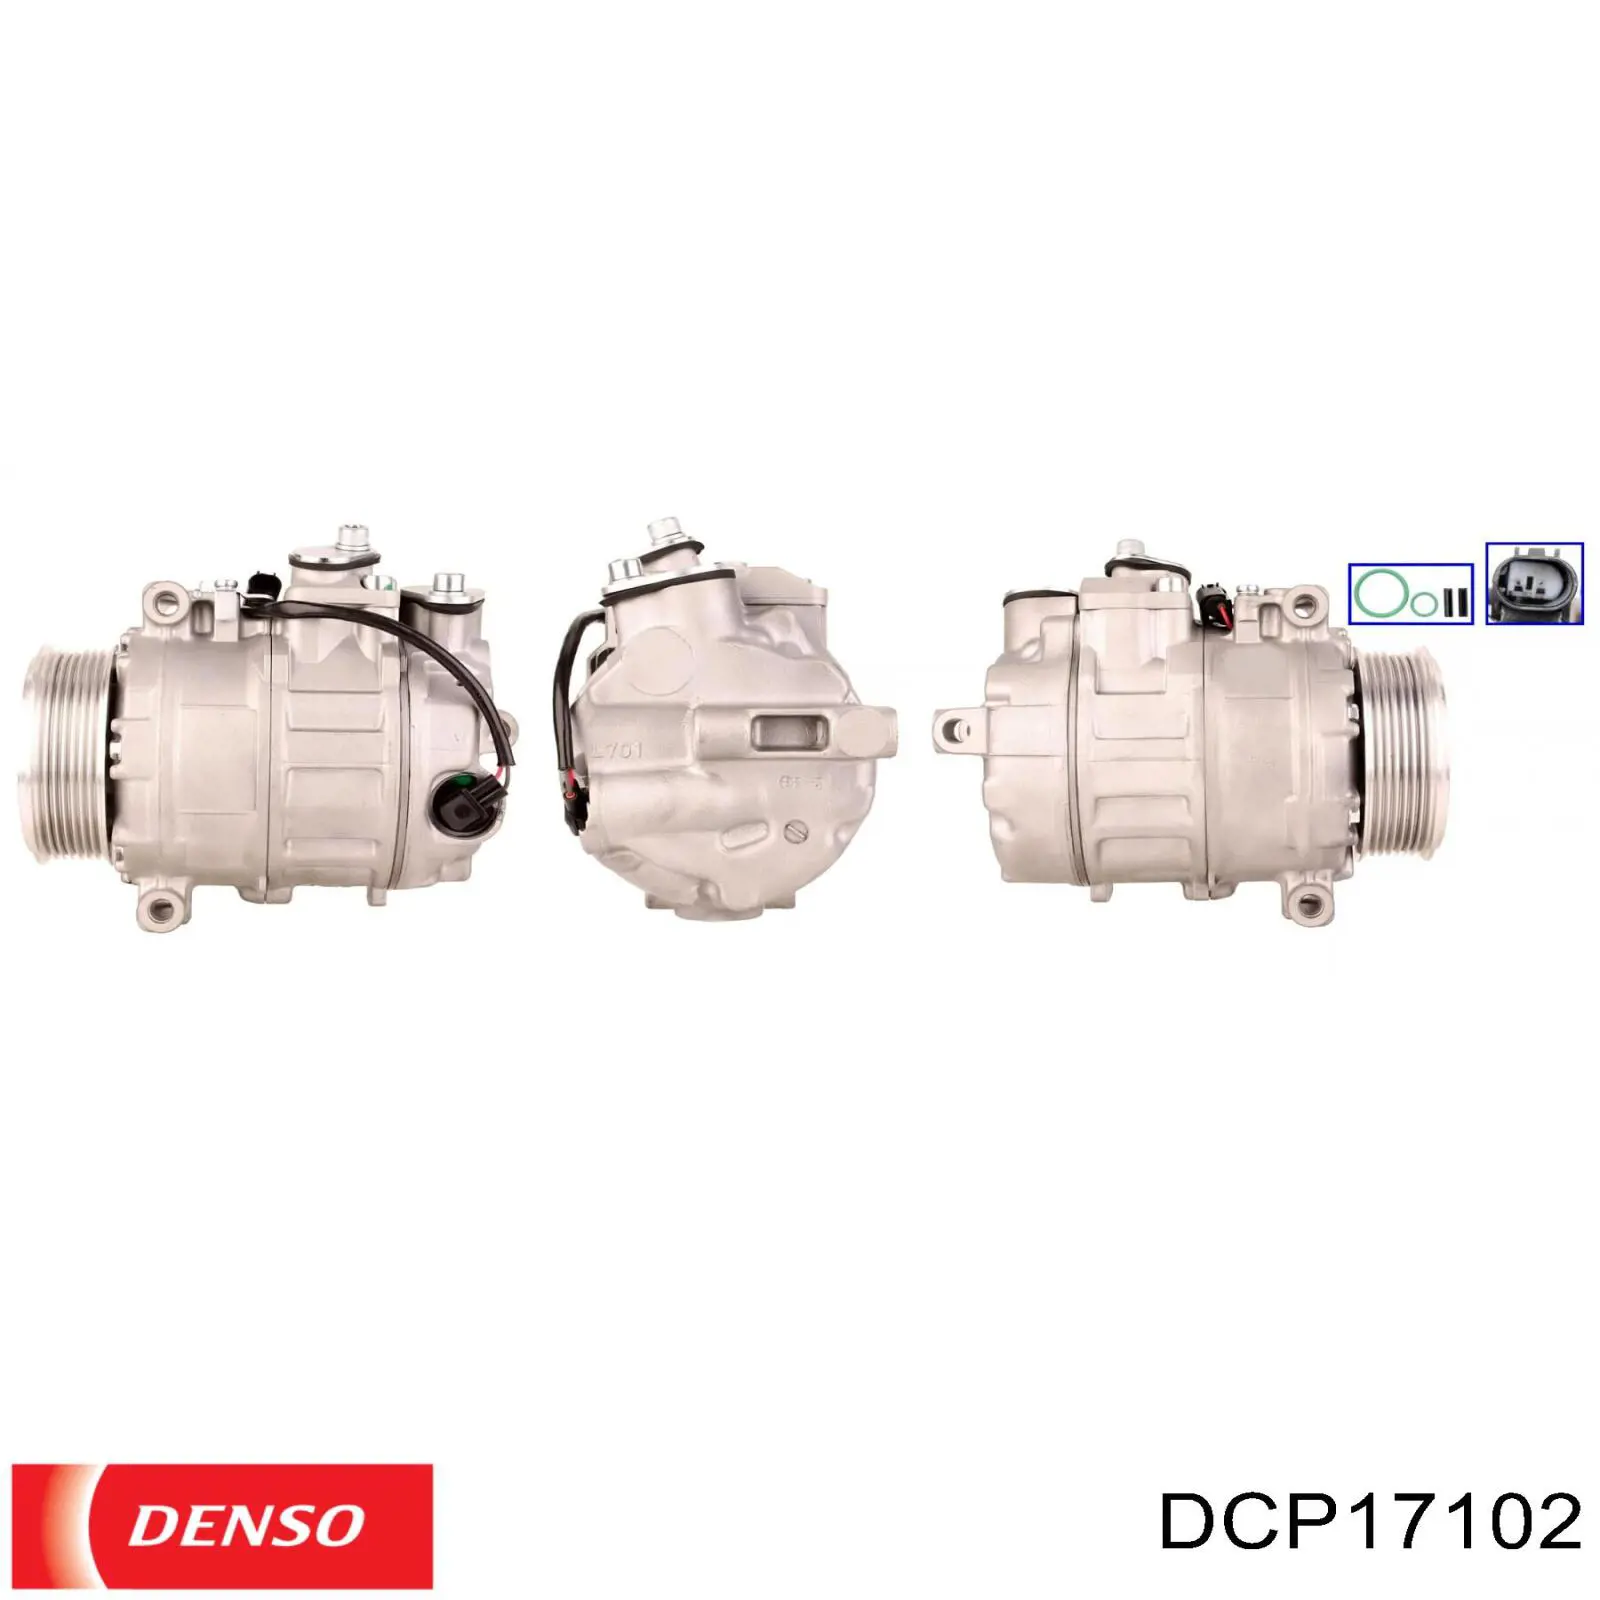 DCP17102 Denso compresor de aire acondicionado